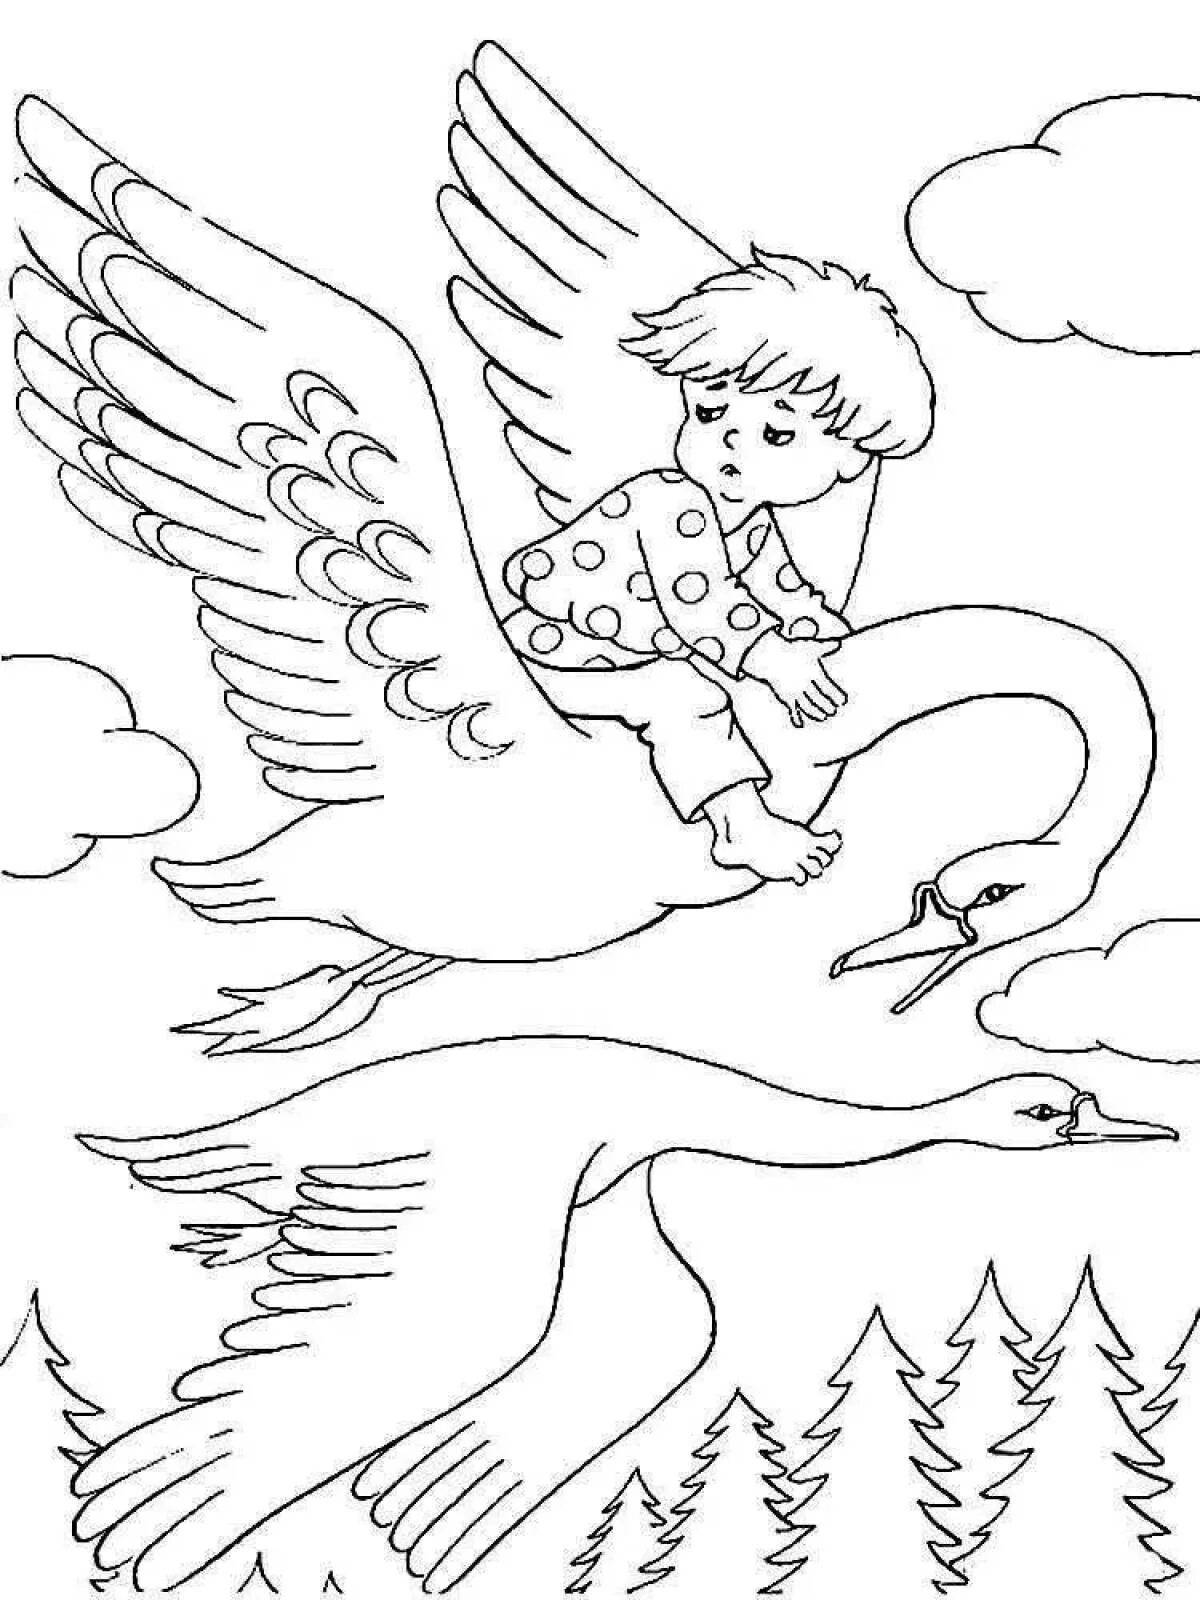 Картинки из сказок раскраски. Сказка-раскраска. Гуси-лебеди. Русские народные сказки. Гуси-лебеди. Раскраски к сказке гуси лебеди для детей. Раскраска по сказке гуси лебеди для детей.